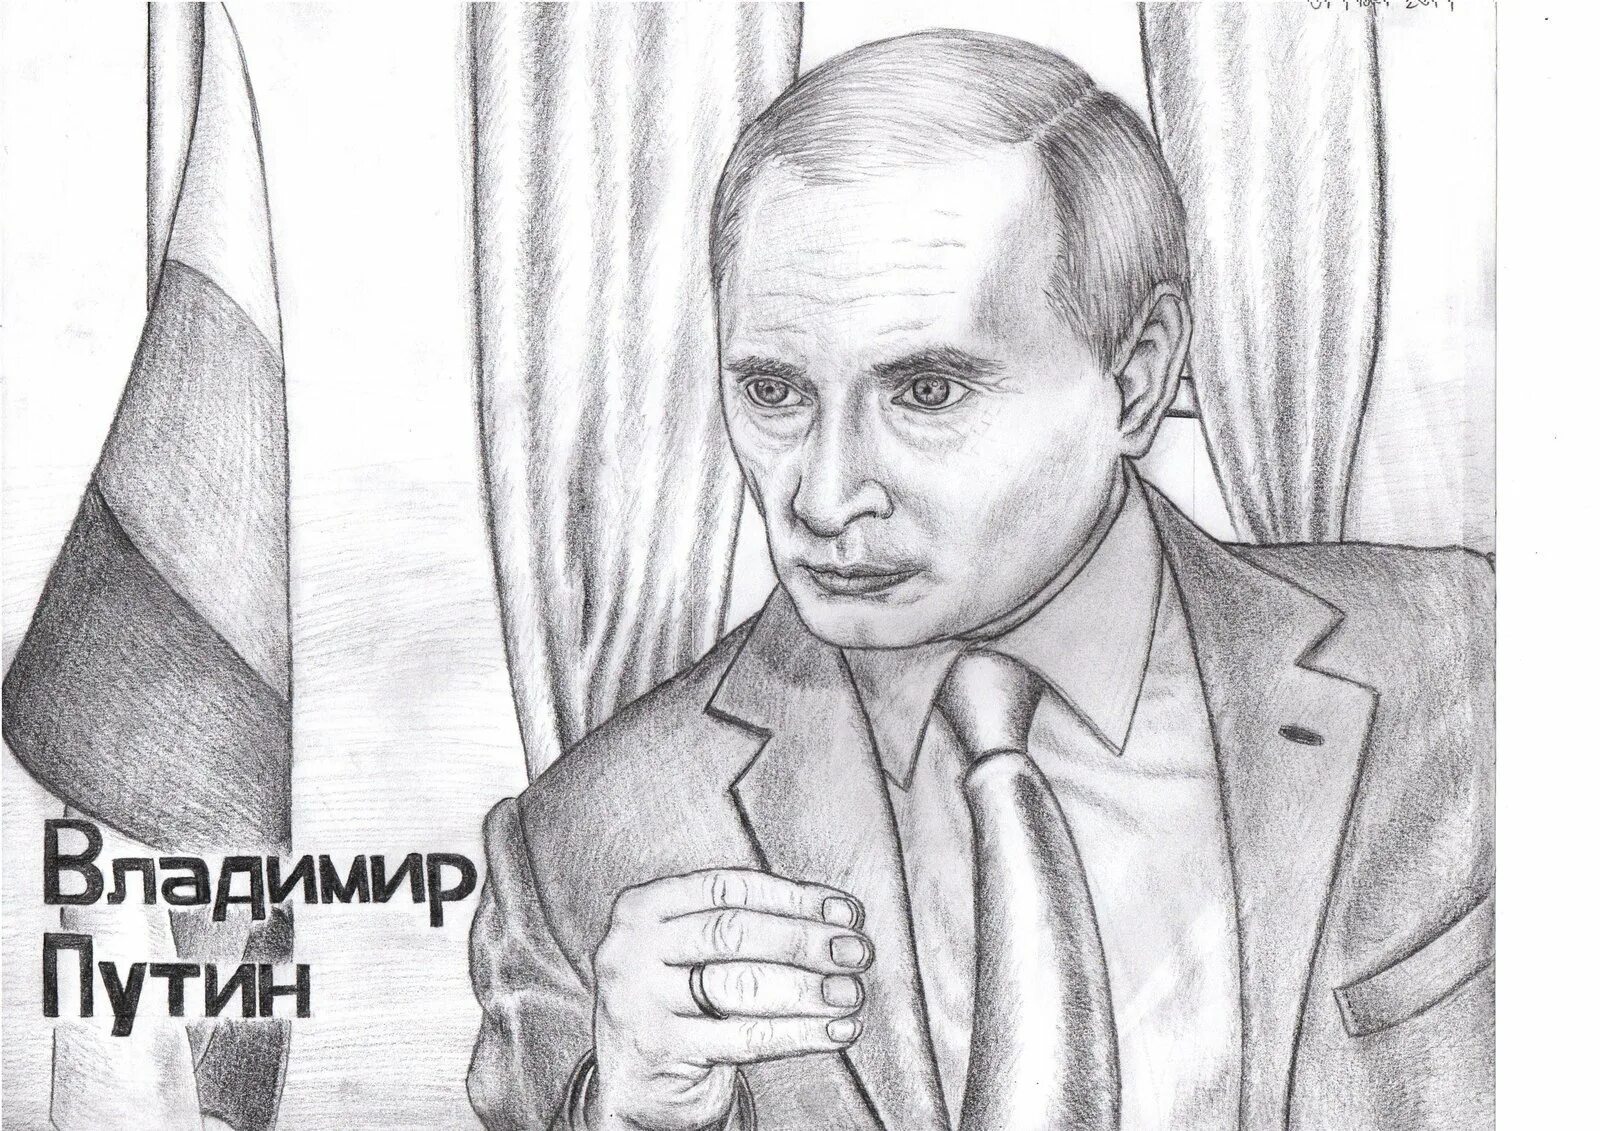 Putin Vladimir Vladimirovich #5